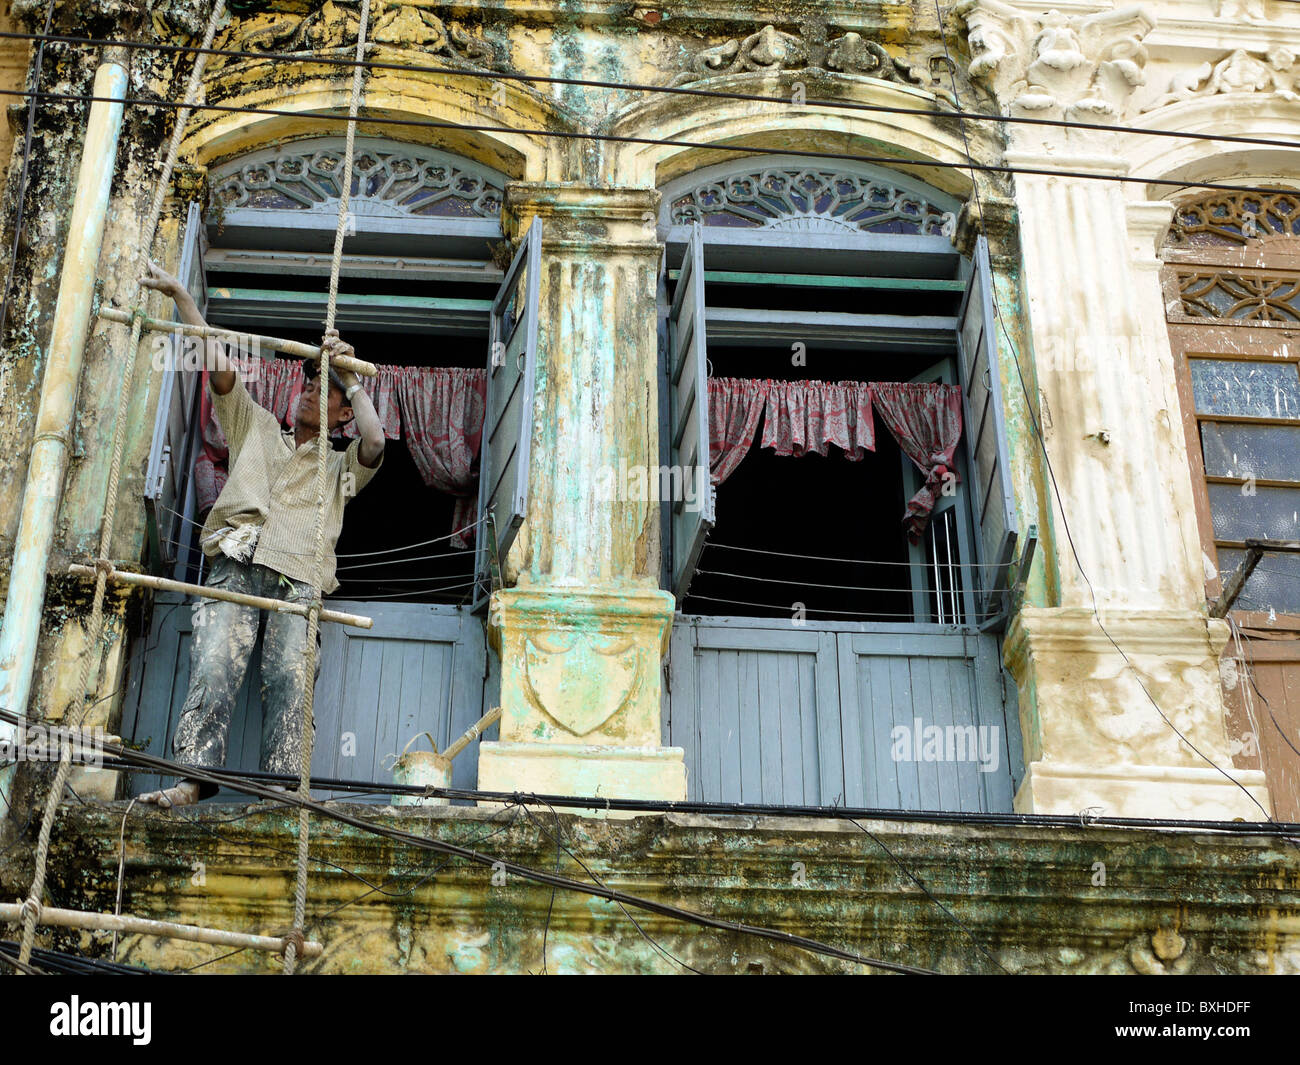 Man painting un bâtiment colonial, Yangon, Birmanie, Myanmar Banque D'Images